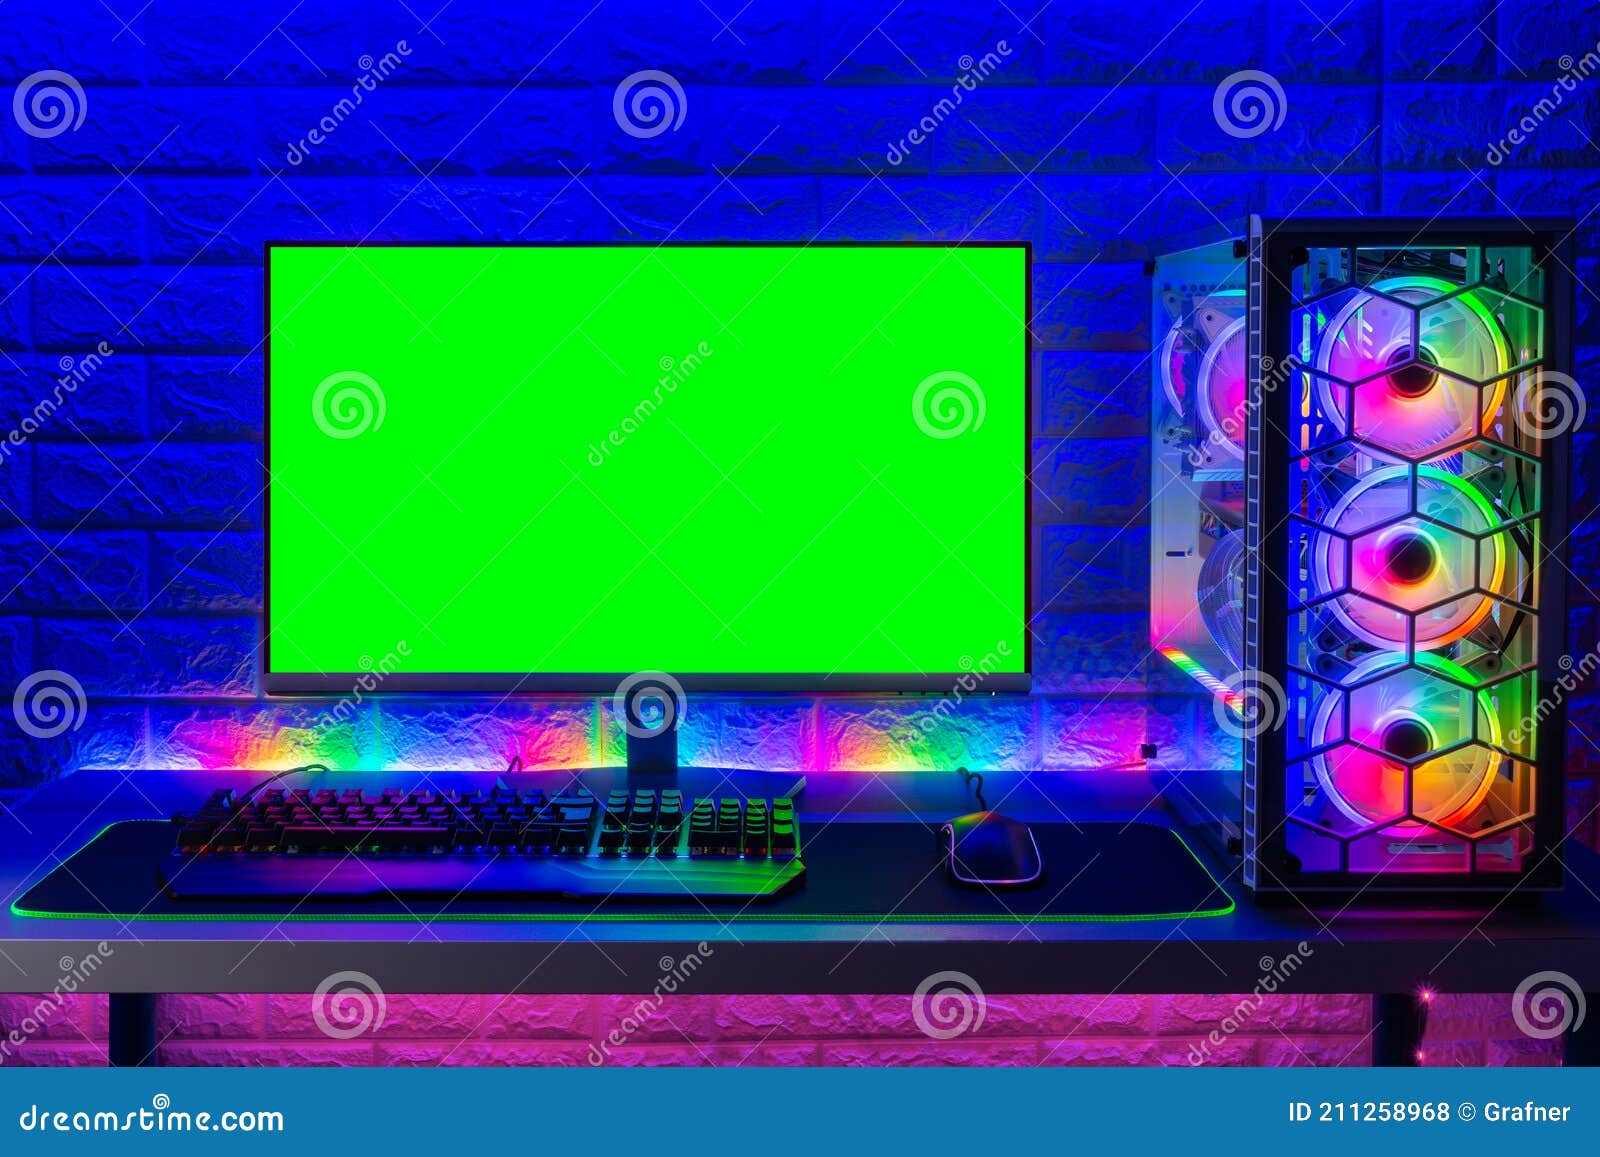 Chiếc máy tính chơi game RGB sáng màu của bạn sẽ trở nên lãng mạn hơn với ánh sáng nhiều màu sắc. Tạo ra những hình ảnh đẹp và sống động nhất với màn hình xanh lục và máy tính chơi game RGB sáng màu của bạn! Hãy sử dụng công cụ này để tạo ra một trải nghiệm trực quan sâu sắc nhất.